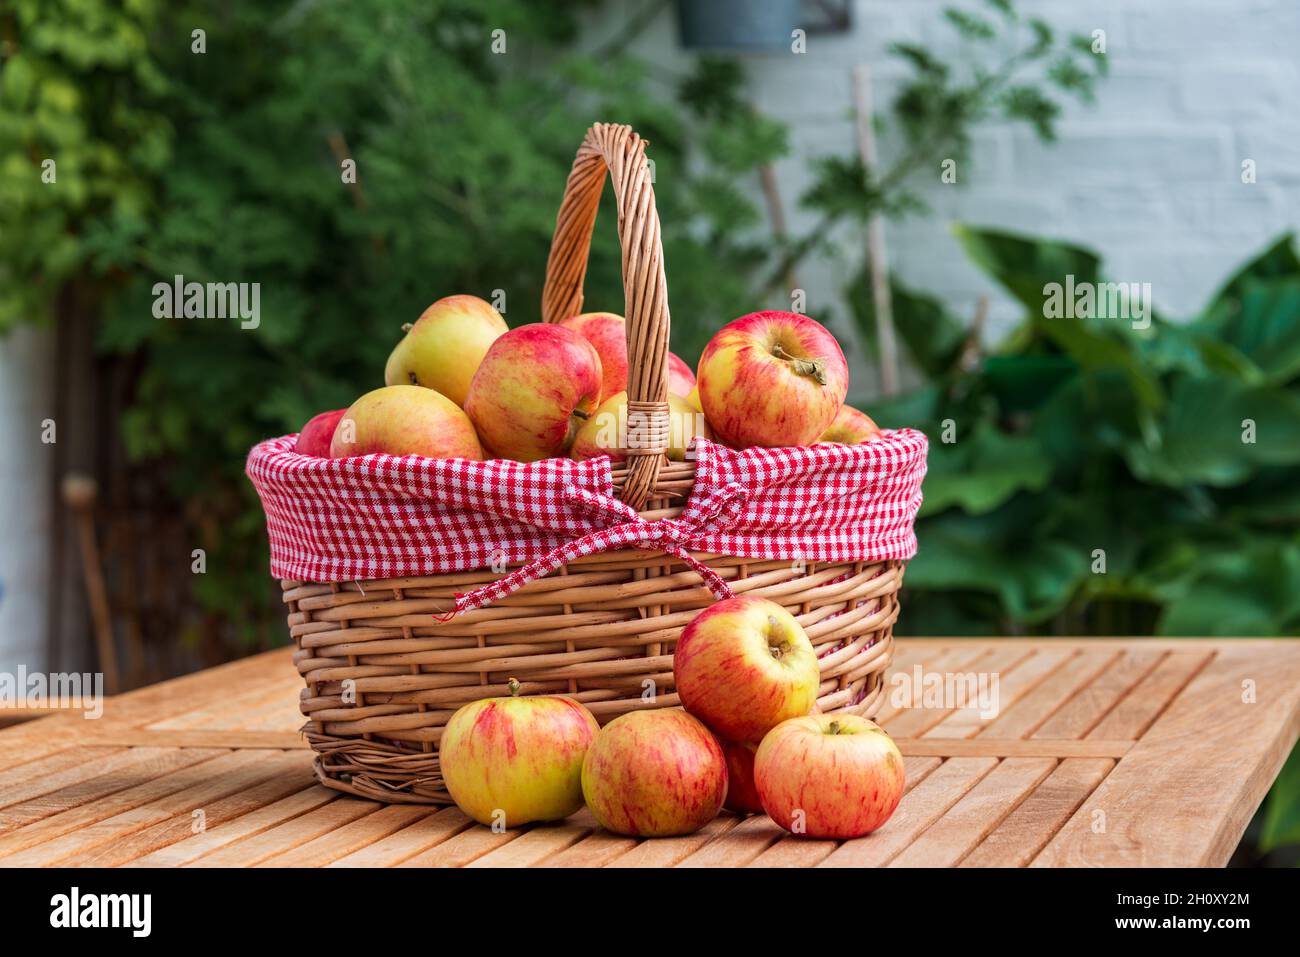 Frisch gepflückte reife Äpfel auf einem Tisch Stock Photo